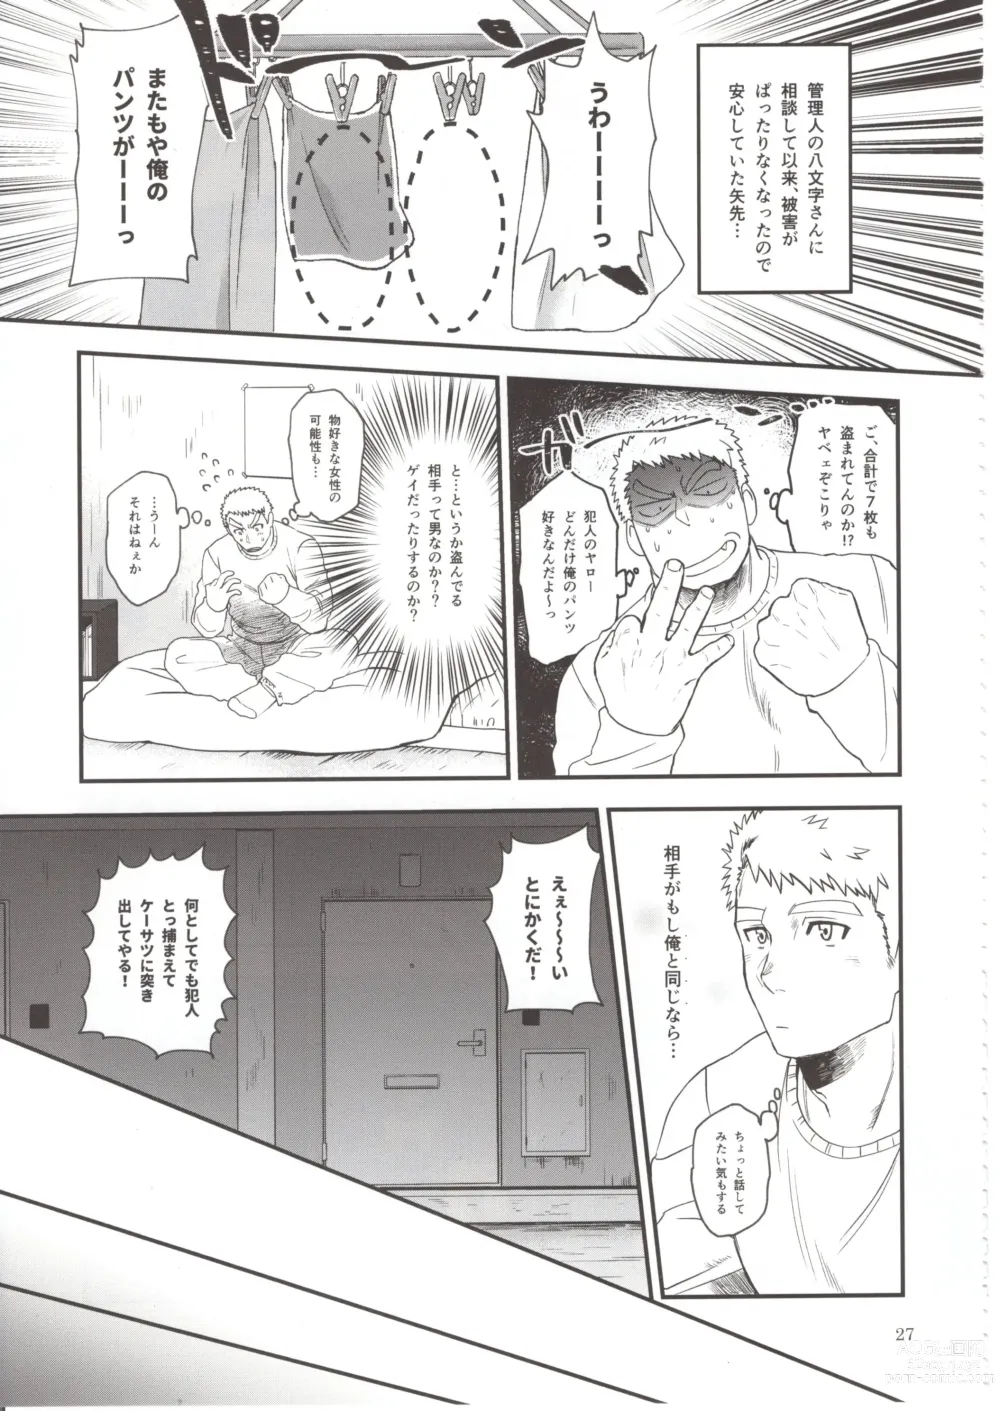 Page 26 of doujinshi Otoko Matsuri vol. 5